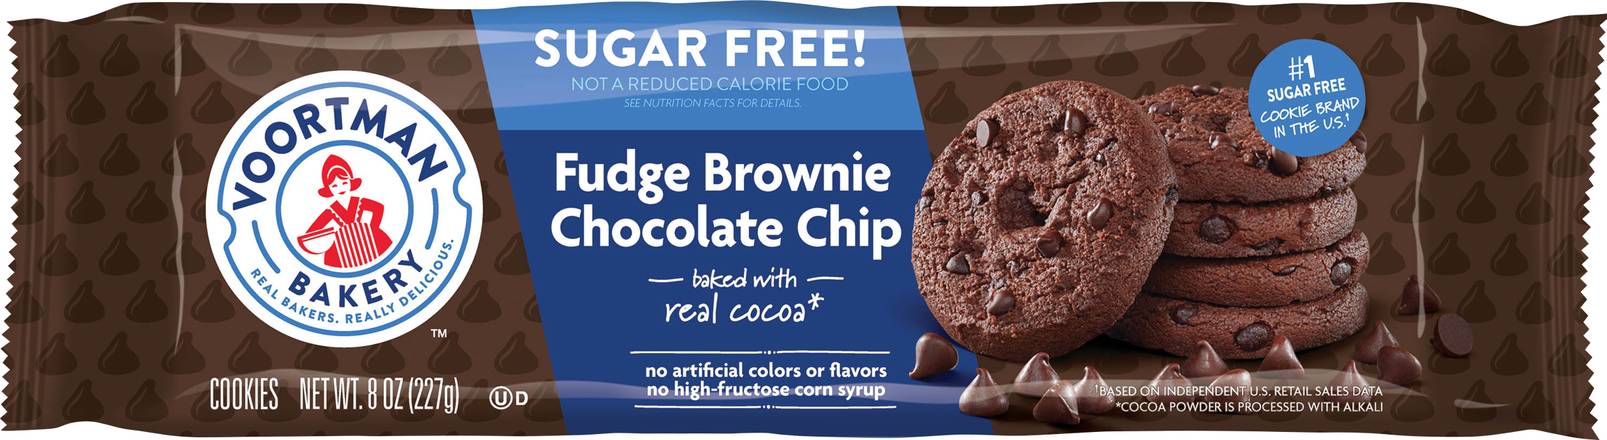 Voortman Sugar Free Fudge Brownie Chocolate Chip Cookies (8 oz)